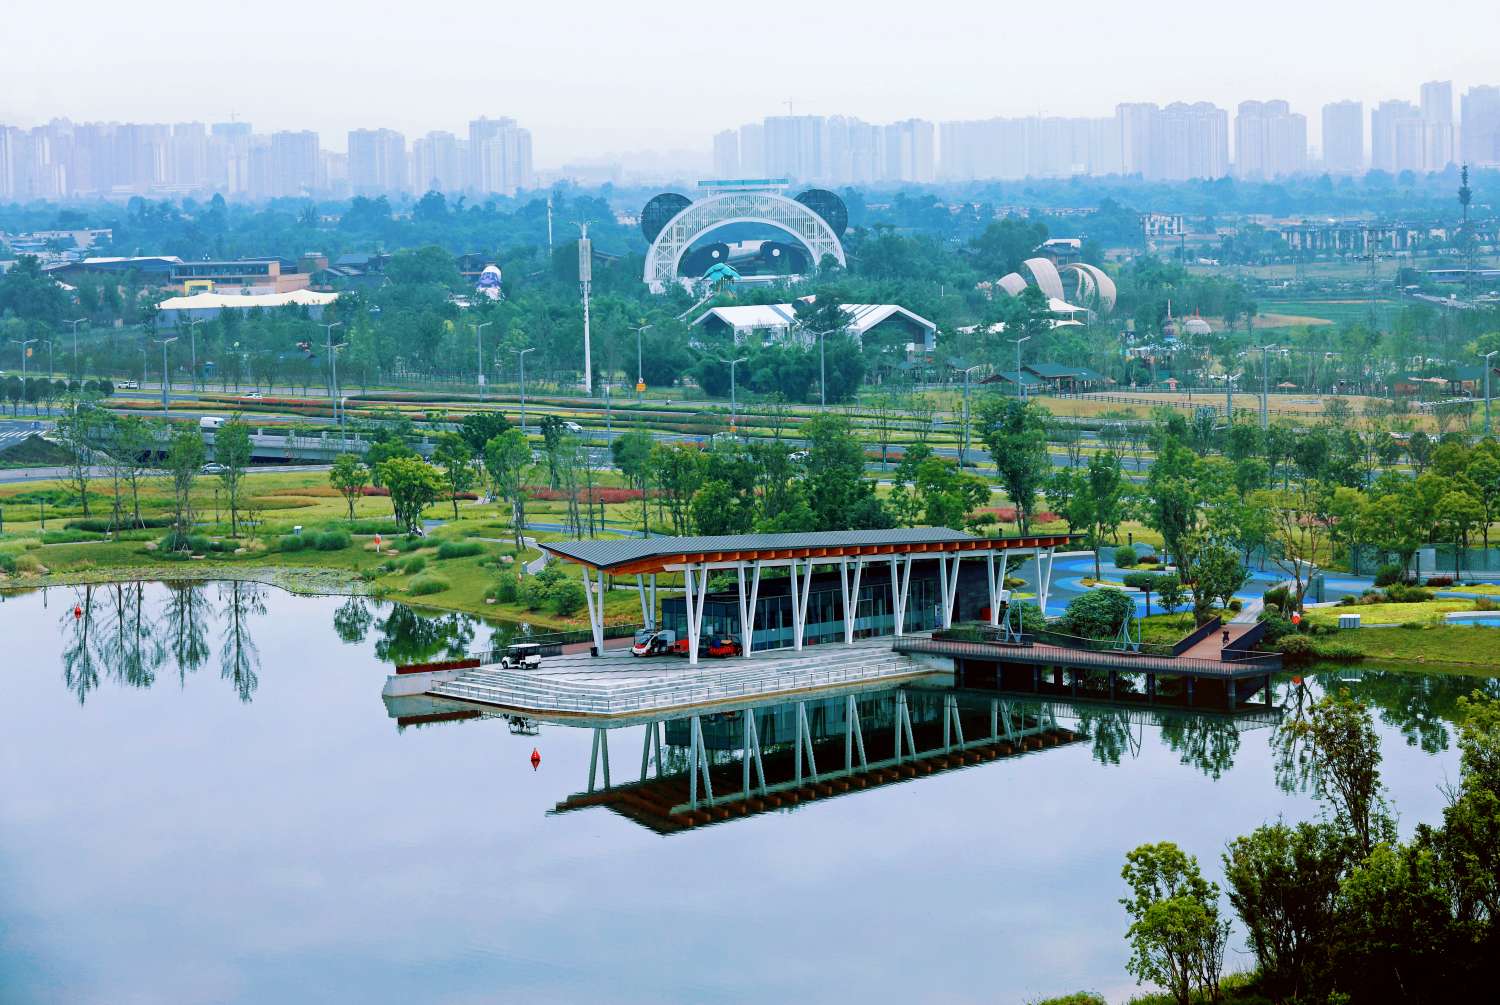 成都龙泉驿区东安湖体育公园(世界大运公园,建筑与景观完美相融,景美